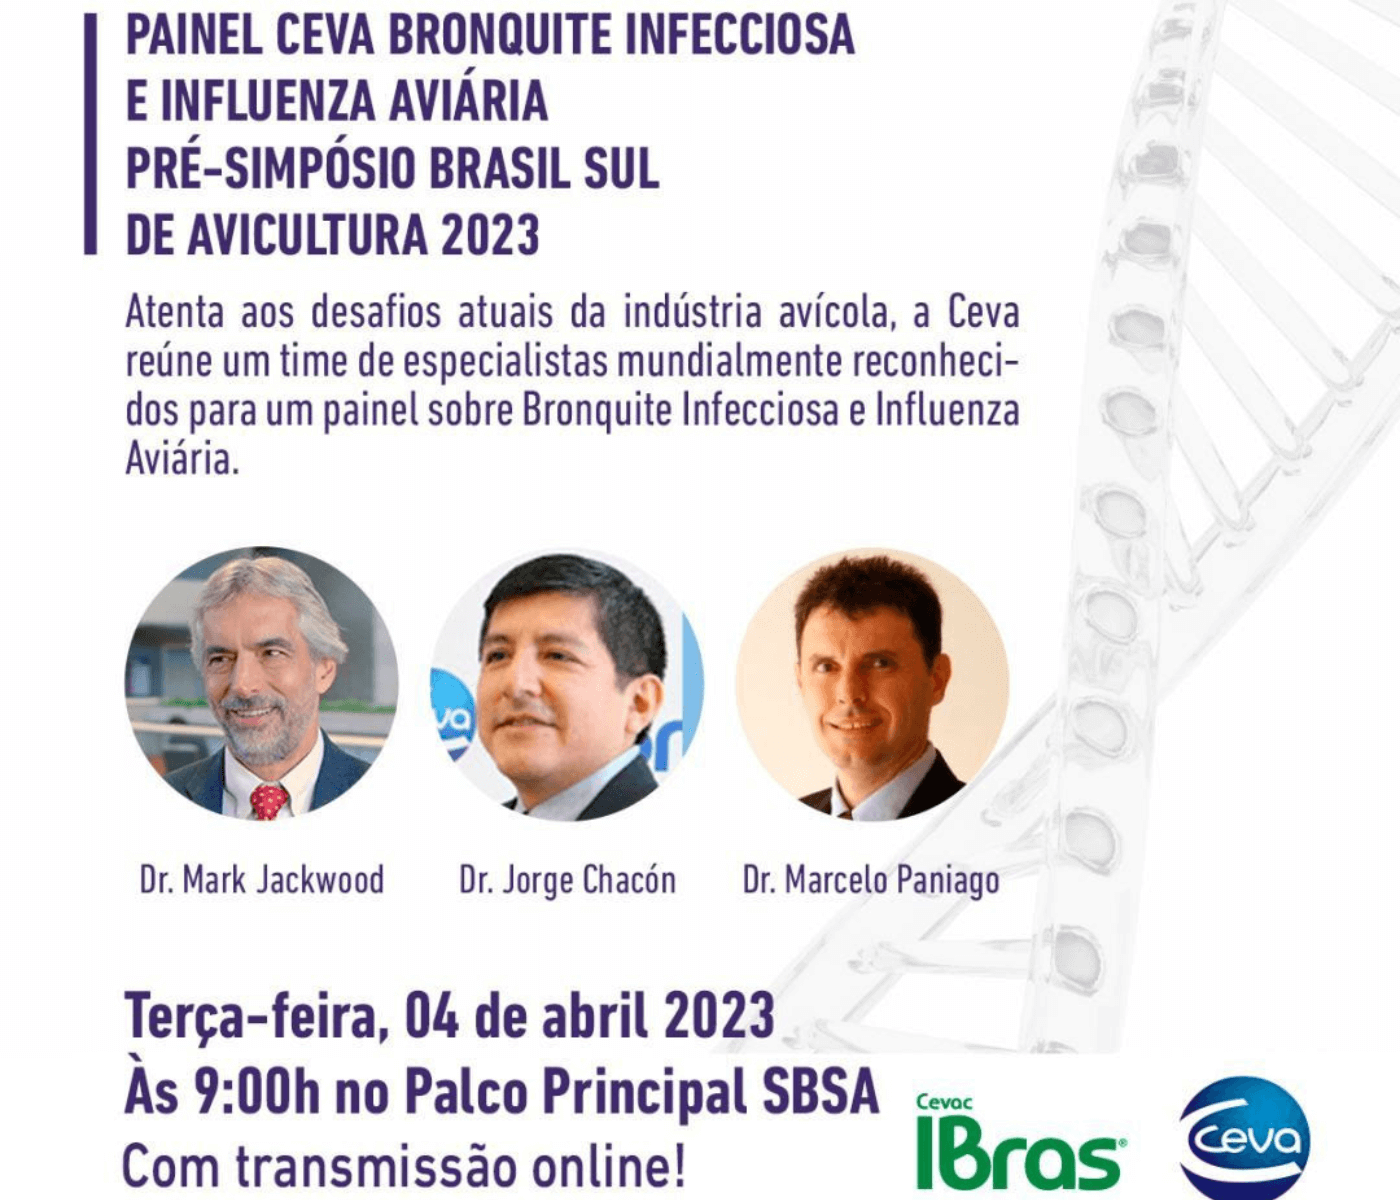 Bronquite Infecciosa e Influenza Aviária serão temas do Painel CEVA...